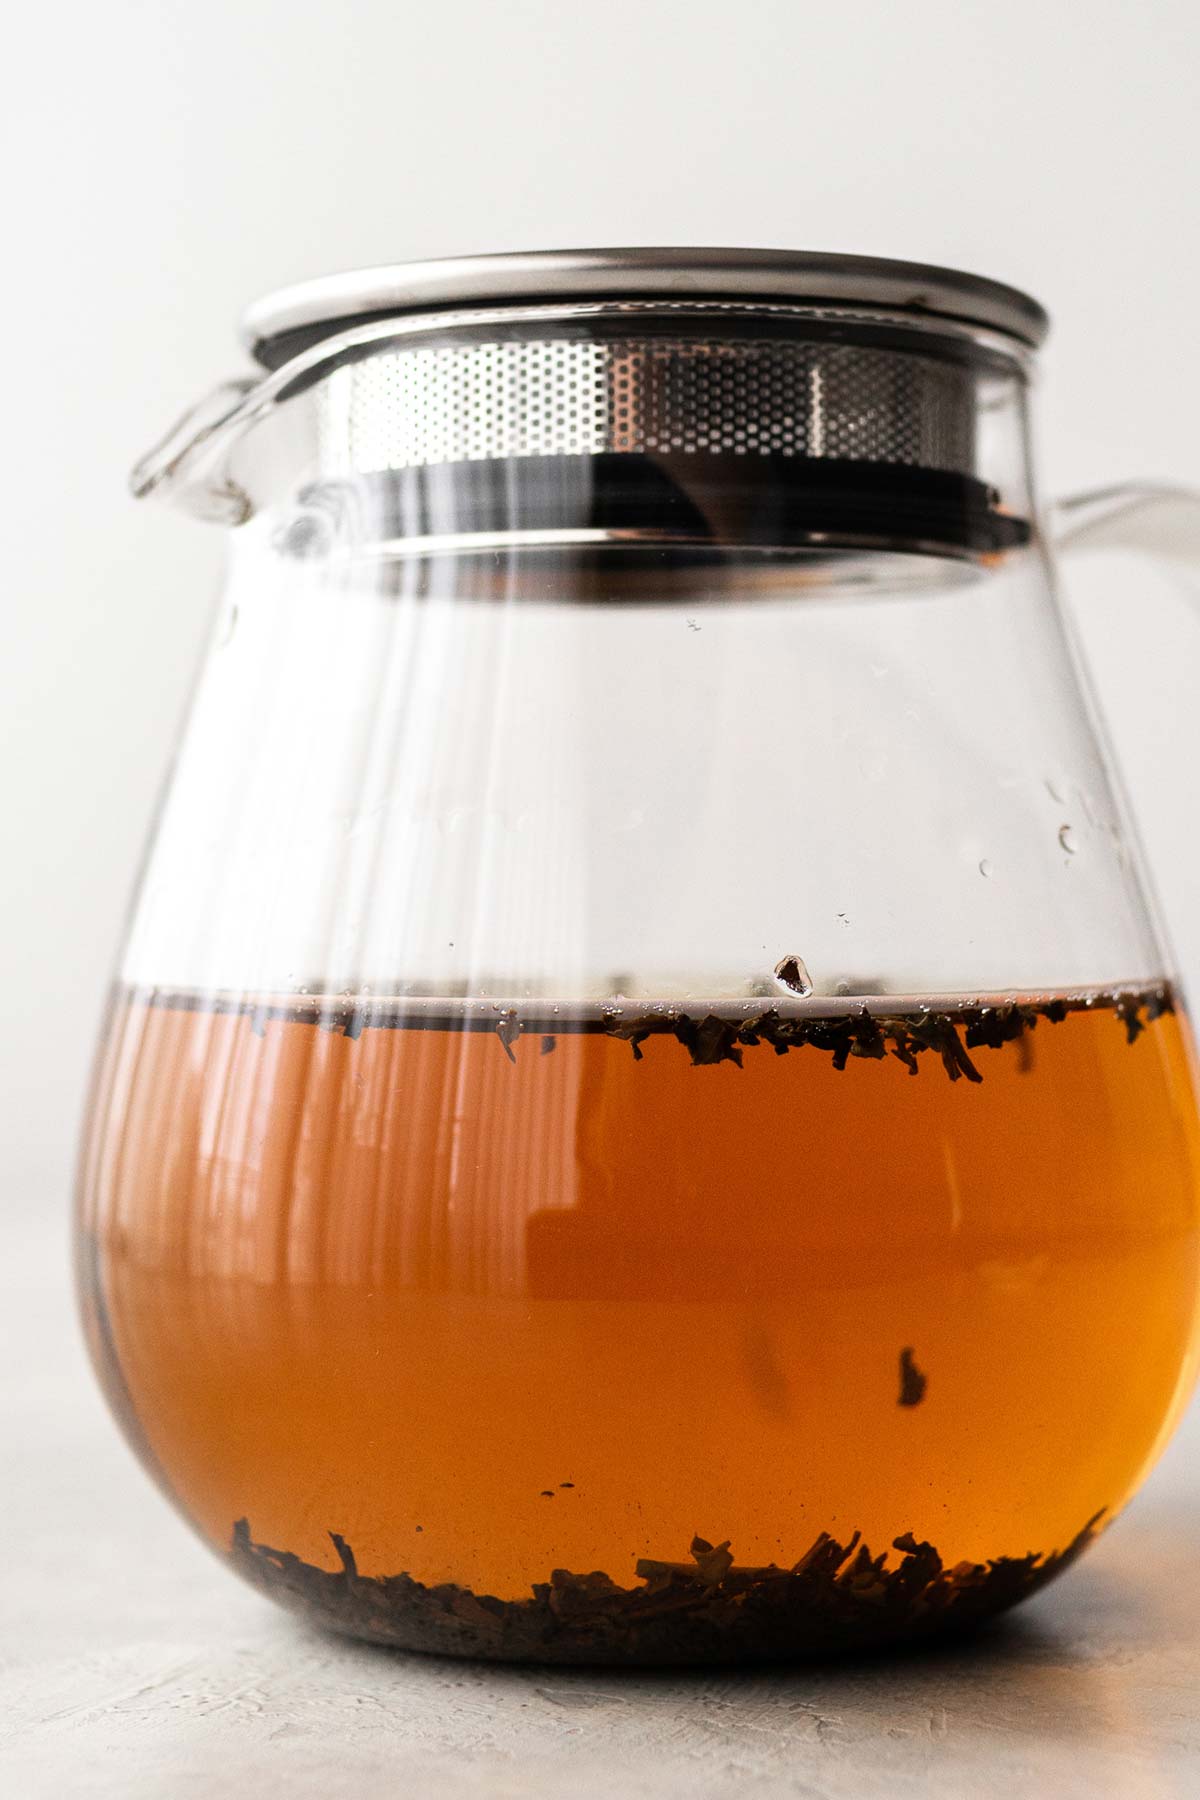 Black tea in a glass teapot.